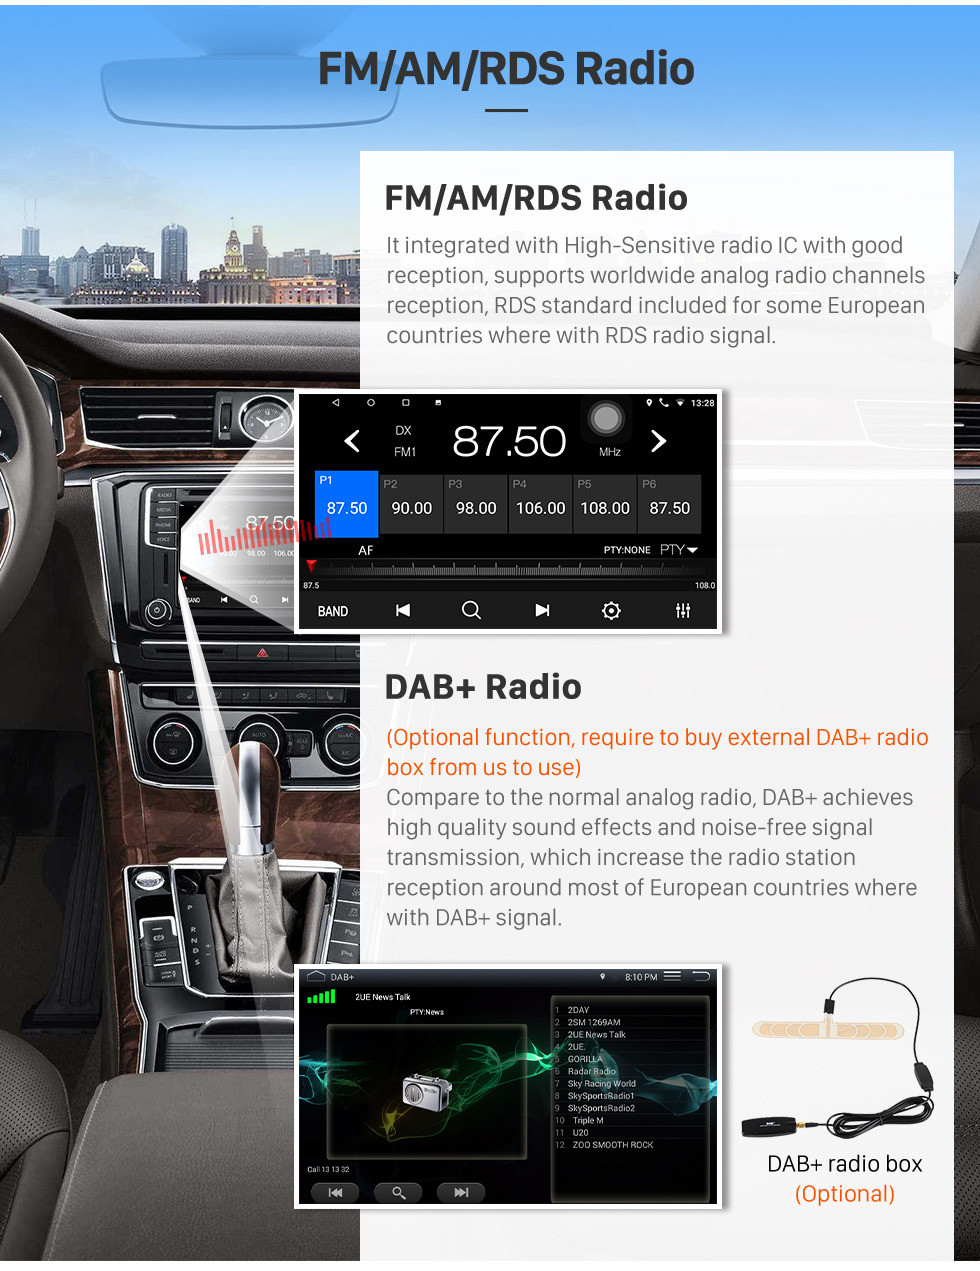 Seicane 9 polegadas 2017 hyundai verna android 10.0 carro multimídia player bluetooth rádio com sistema de navegação gps wi-fi música espelho link usb suporte volante controle dvr câmera retrovisor obd2 dab +